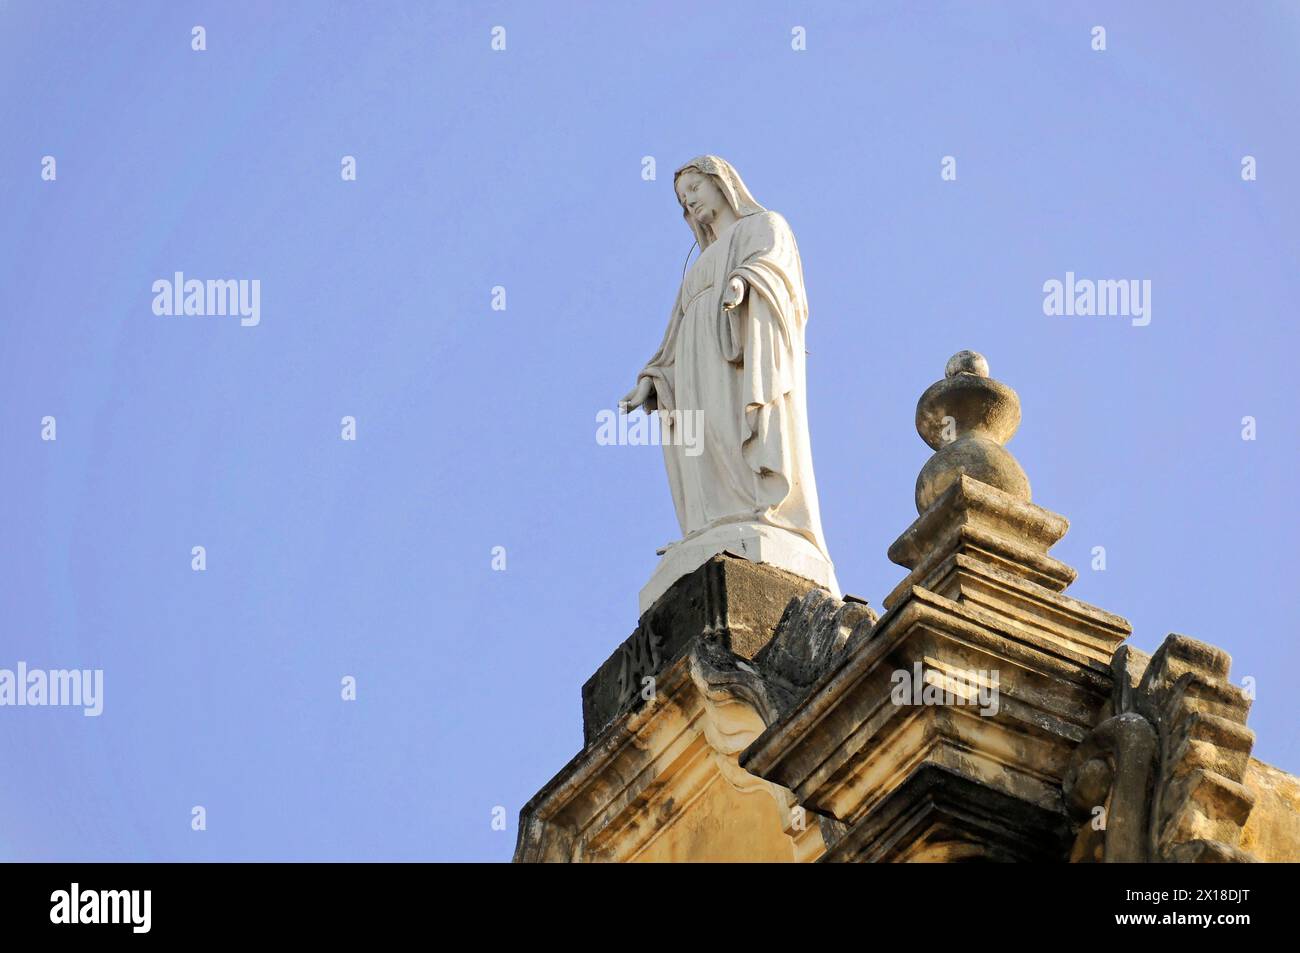 Église la Recoleccion, 1786, Léon, Nicaragua, statue blanche du Christ devant un ciel bleu clair, Amérique centrale, Amérique centrale Banque D'Images